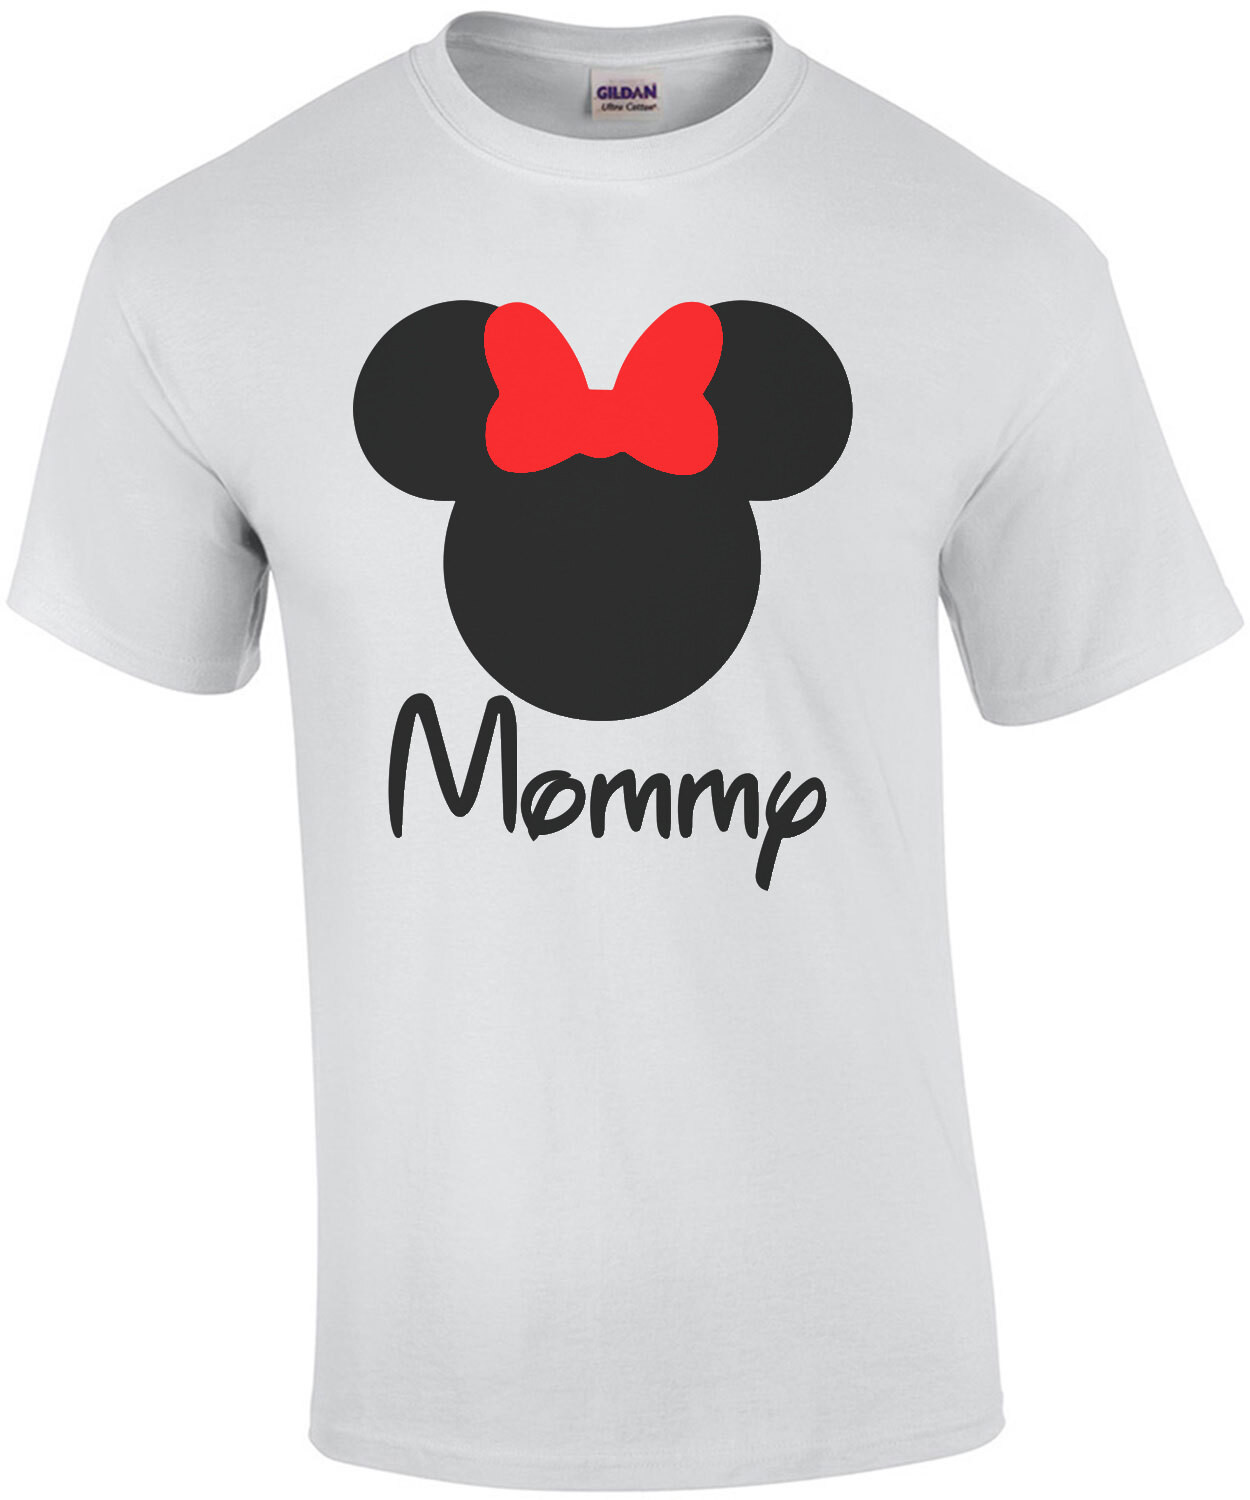 Mommy - Disney World - Custom Family Group T-Shirt